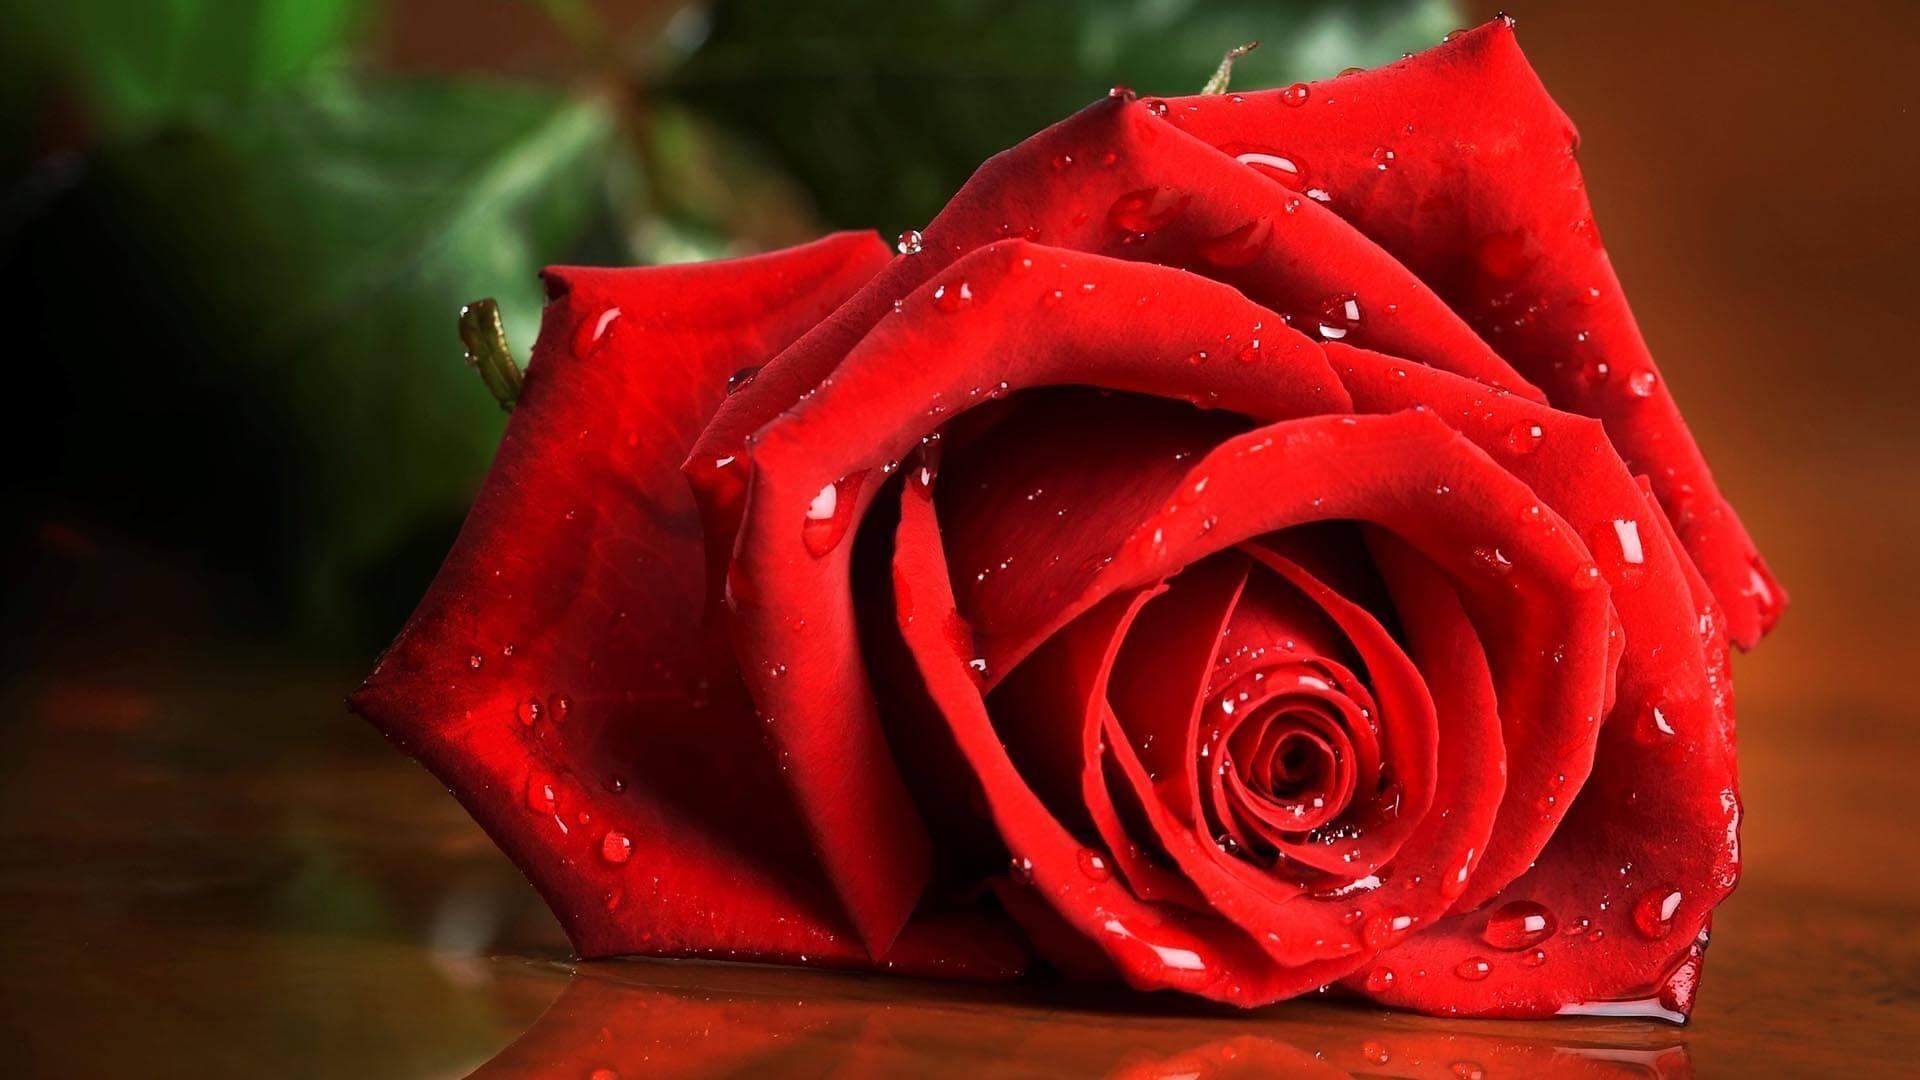 Bức hình tuyệt đẹp về hoa hồng sẽ khiến bạn say đắm và xao xuyến trước vẻ đẹp tuyệt vời. Hãy thưởng thức những bông hoa hồng bừng sáng trong ánh nắng và tìm thấy những cảm xúc tuyệt vời nhất.